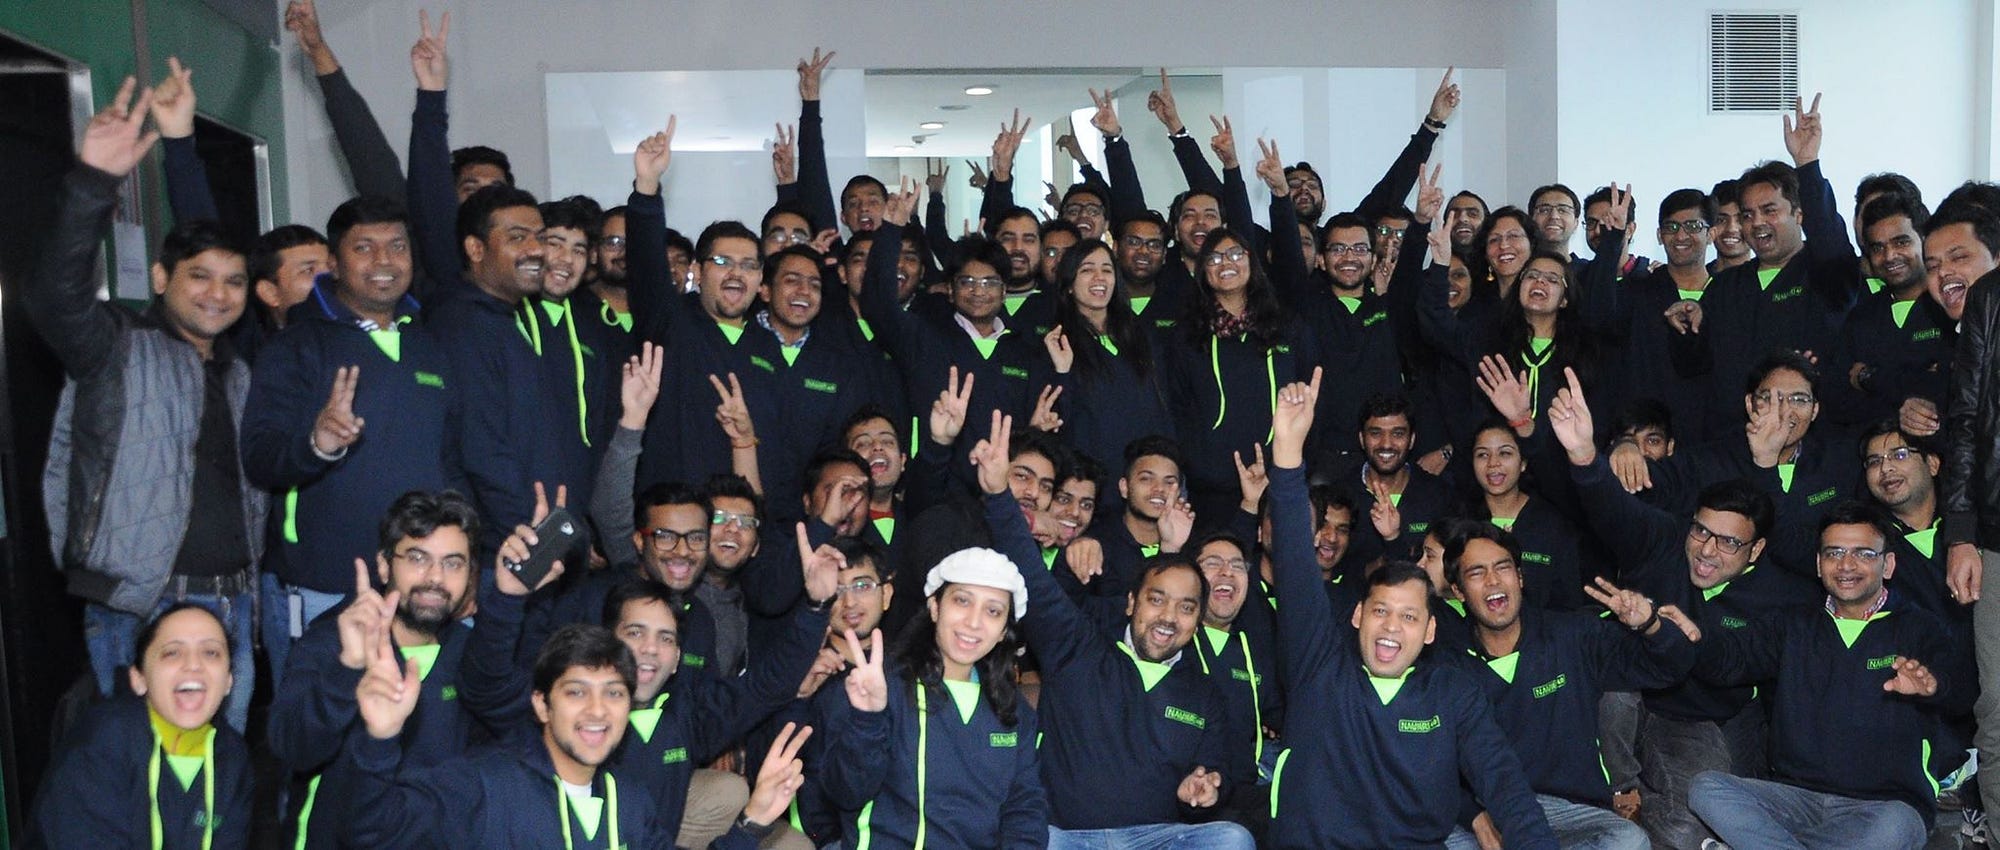 Naukri Engineering Team - Hackathon Glimpse.